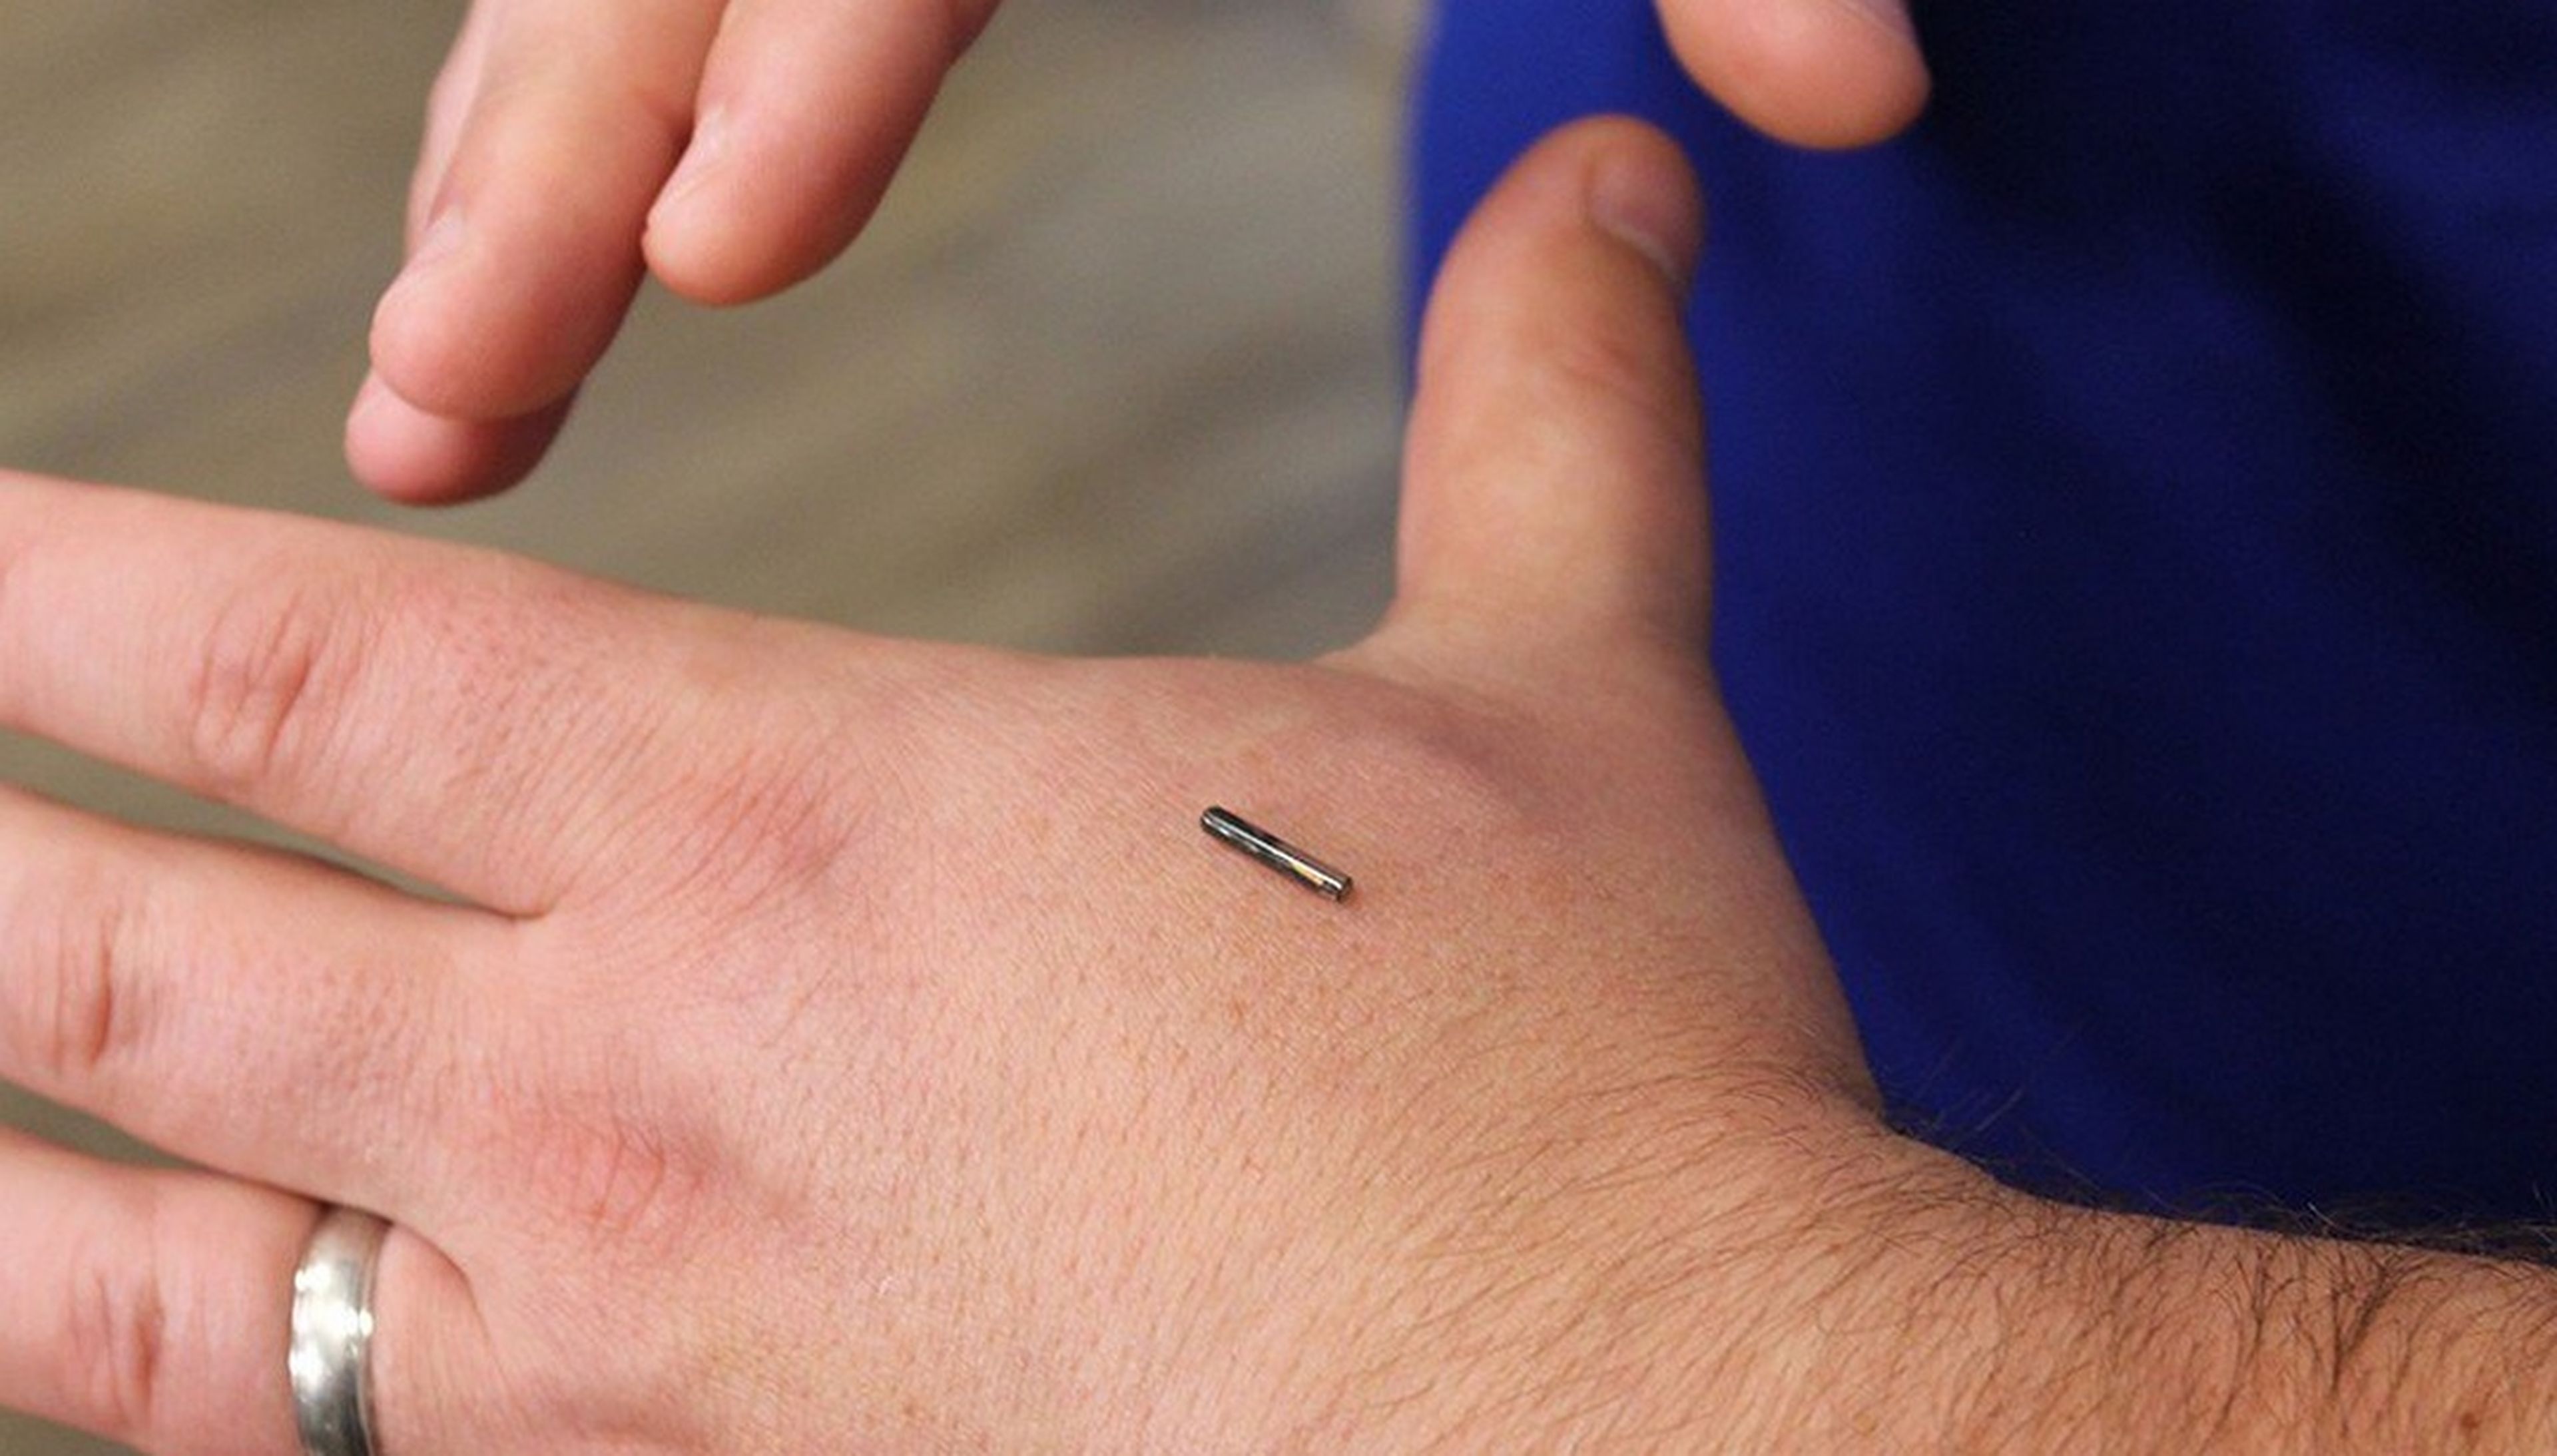 Esta empresa inserta microchips en la piel a sus empleados, pero no todos lo aceptan